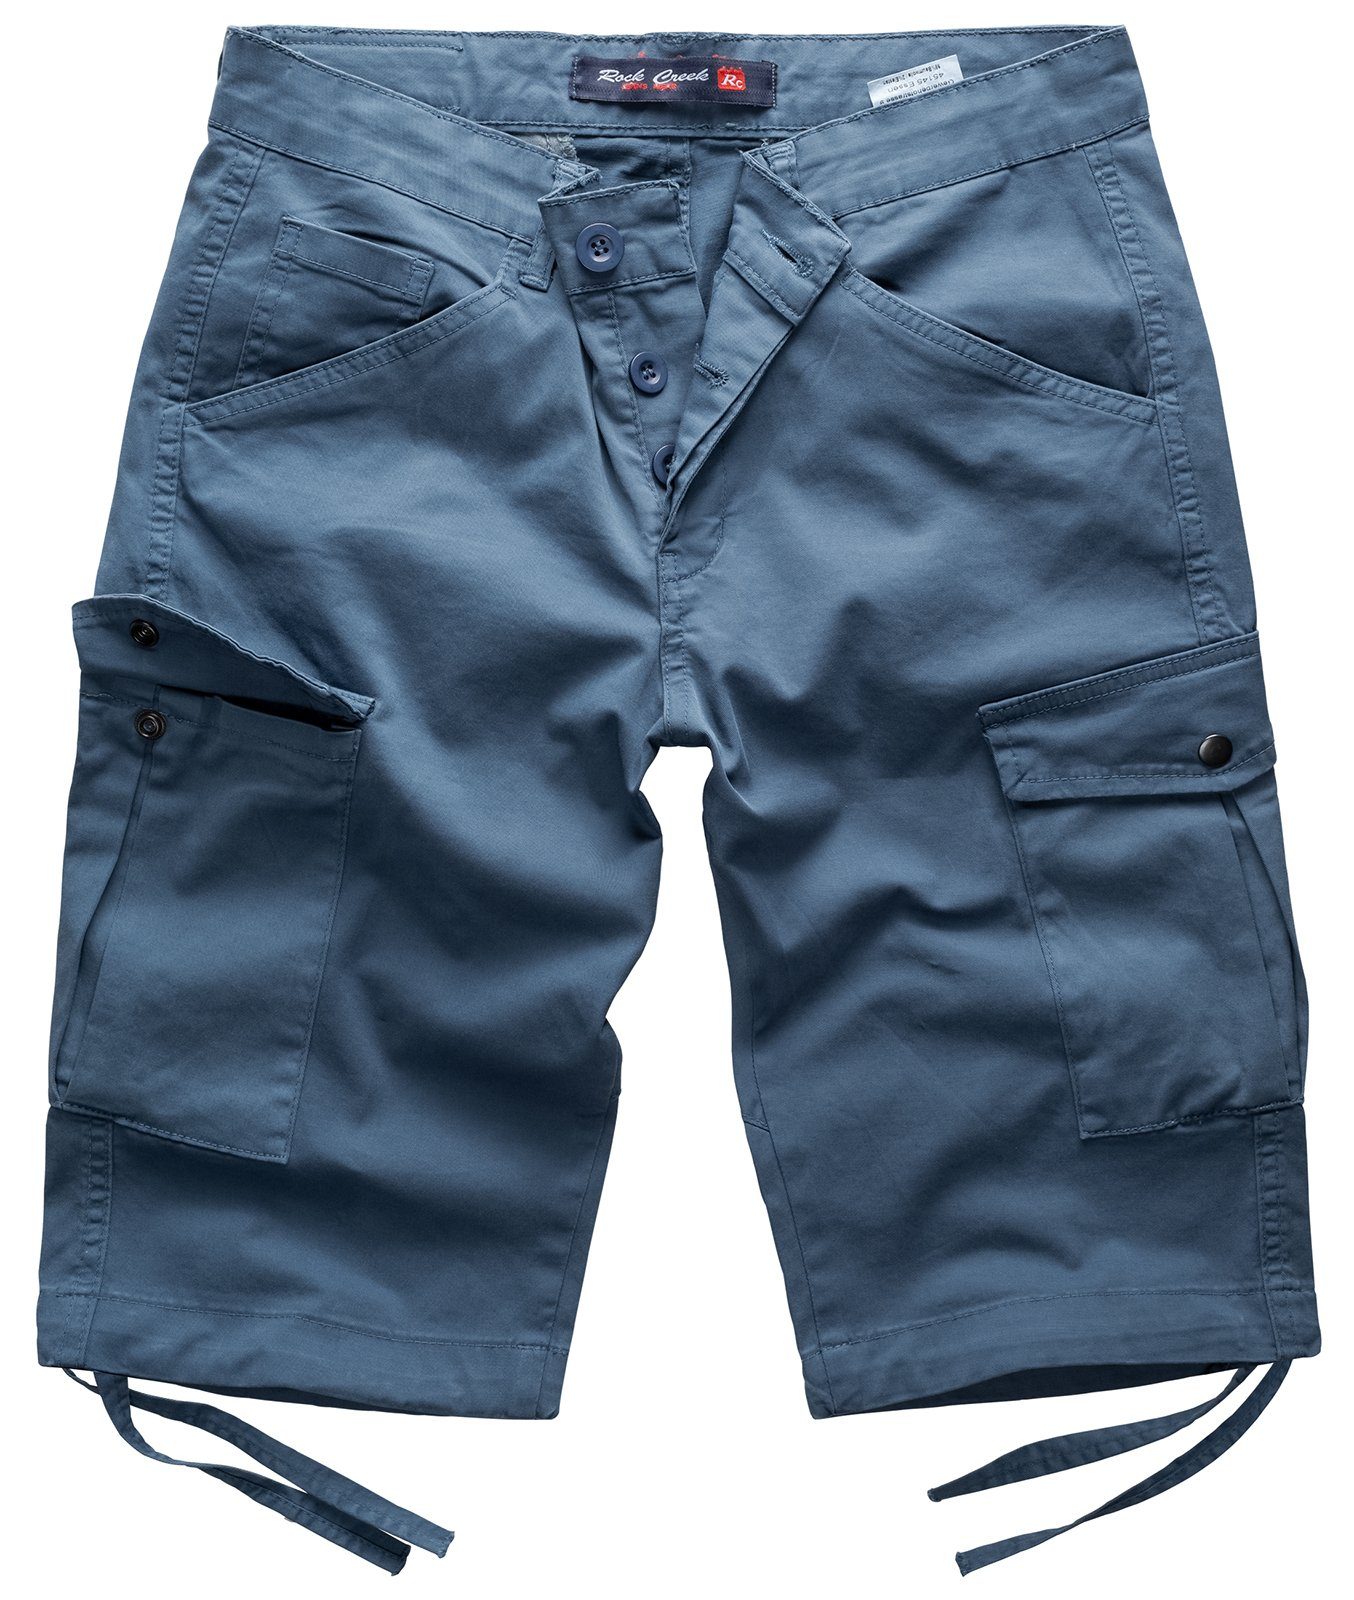 Rock Creek Cargoshorts Herren Cargo Shorts mit Taschen RC-393 Blau